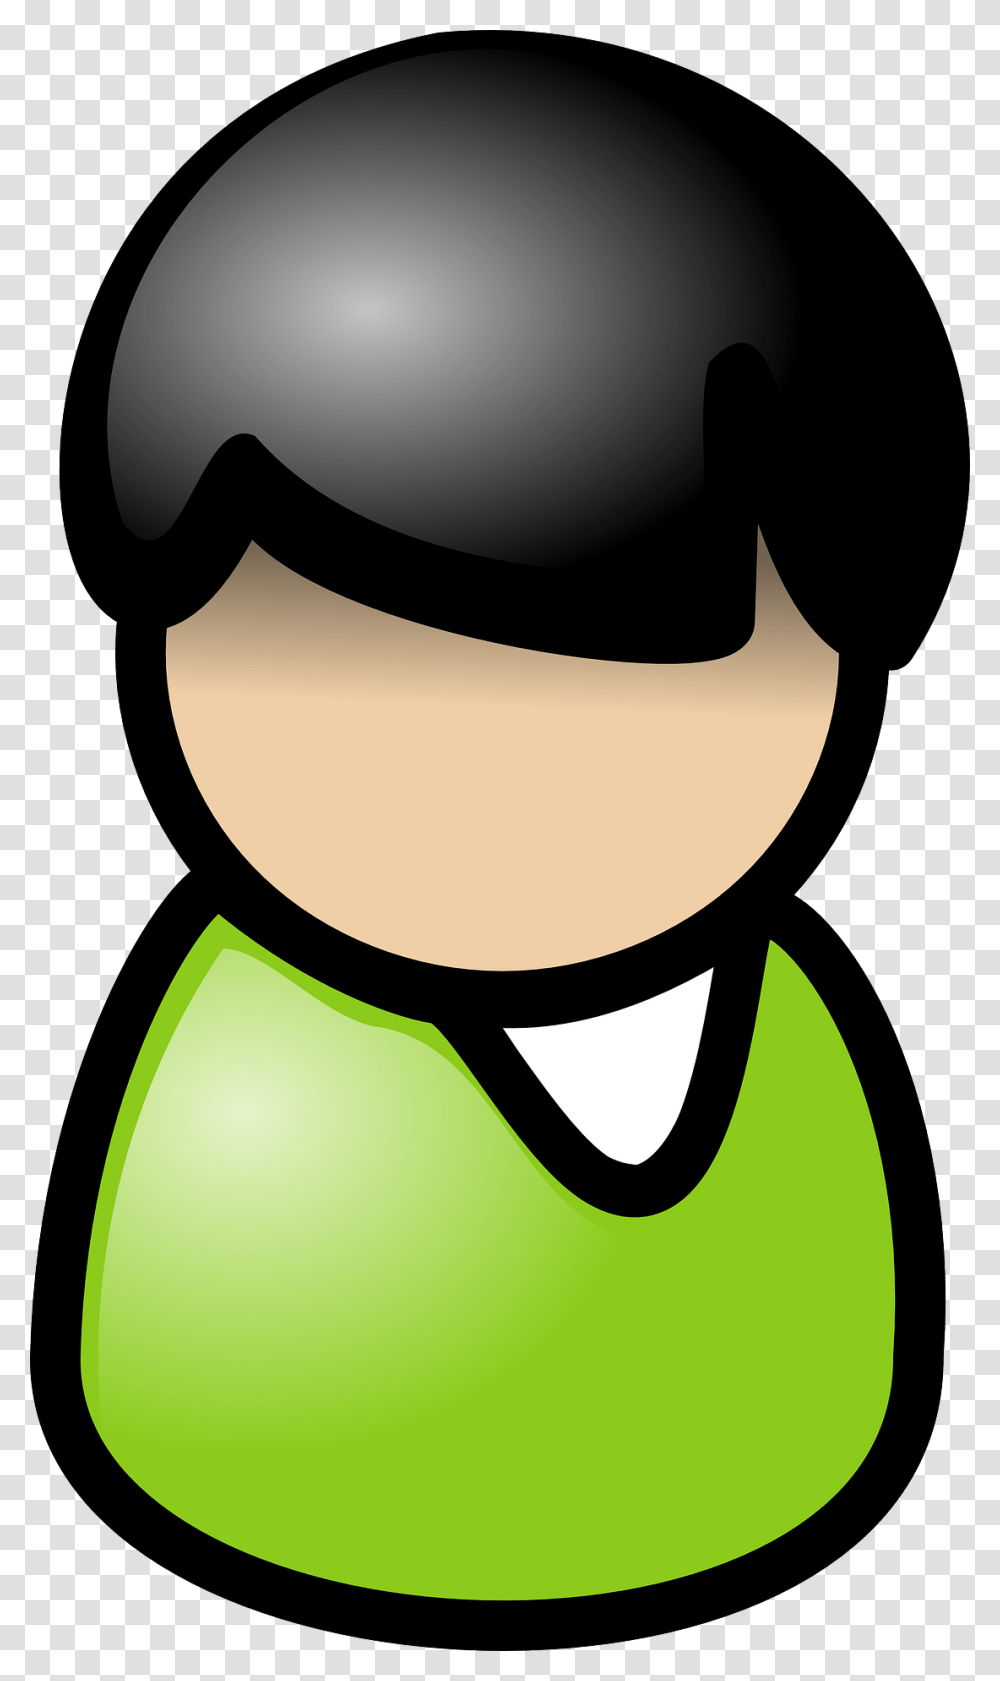 Clker Com Vector Clip Art Online Clip Art Man Symbol, Plant, Helmet, Clothing, Graphics Transparent Png